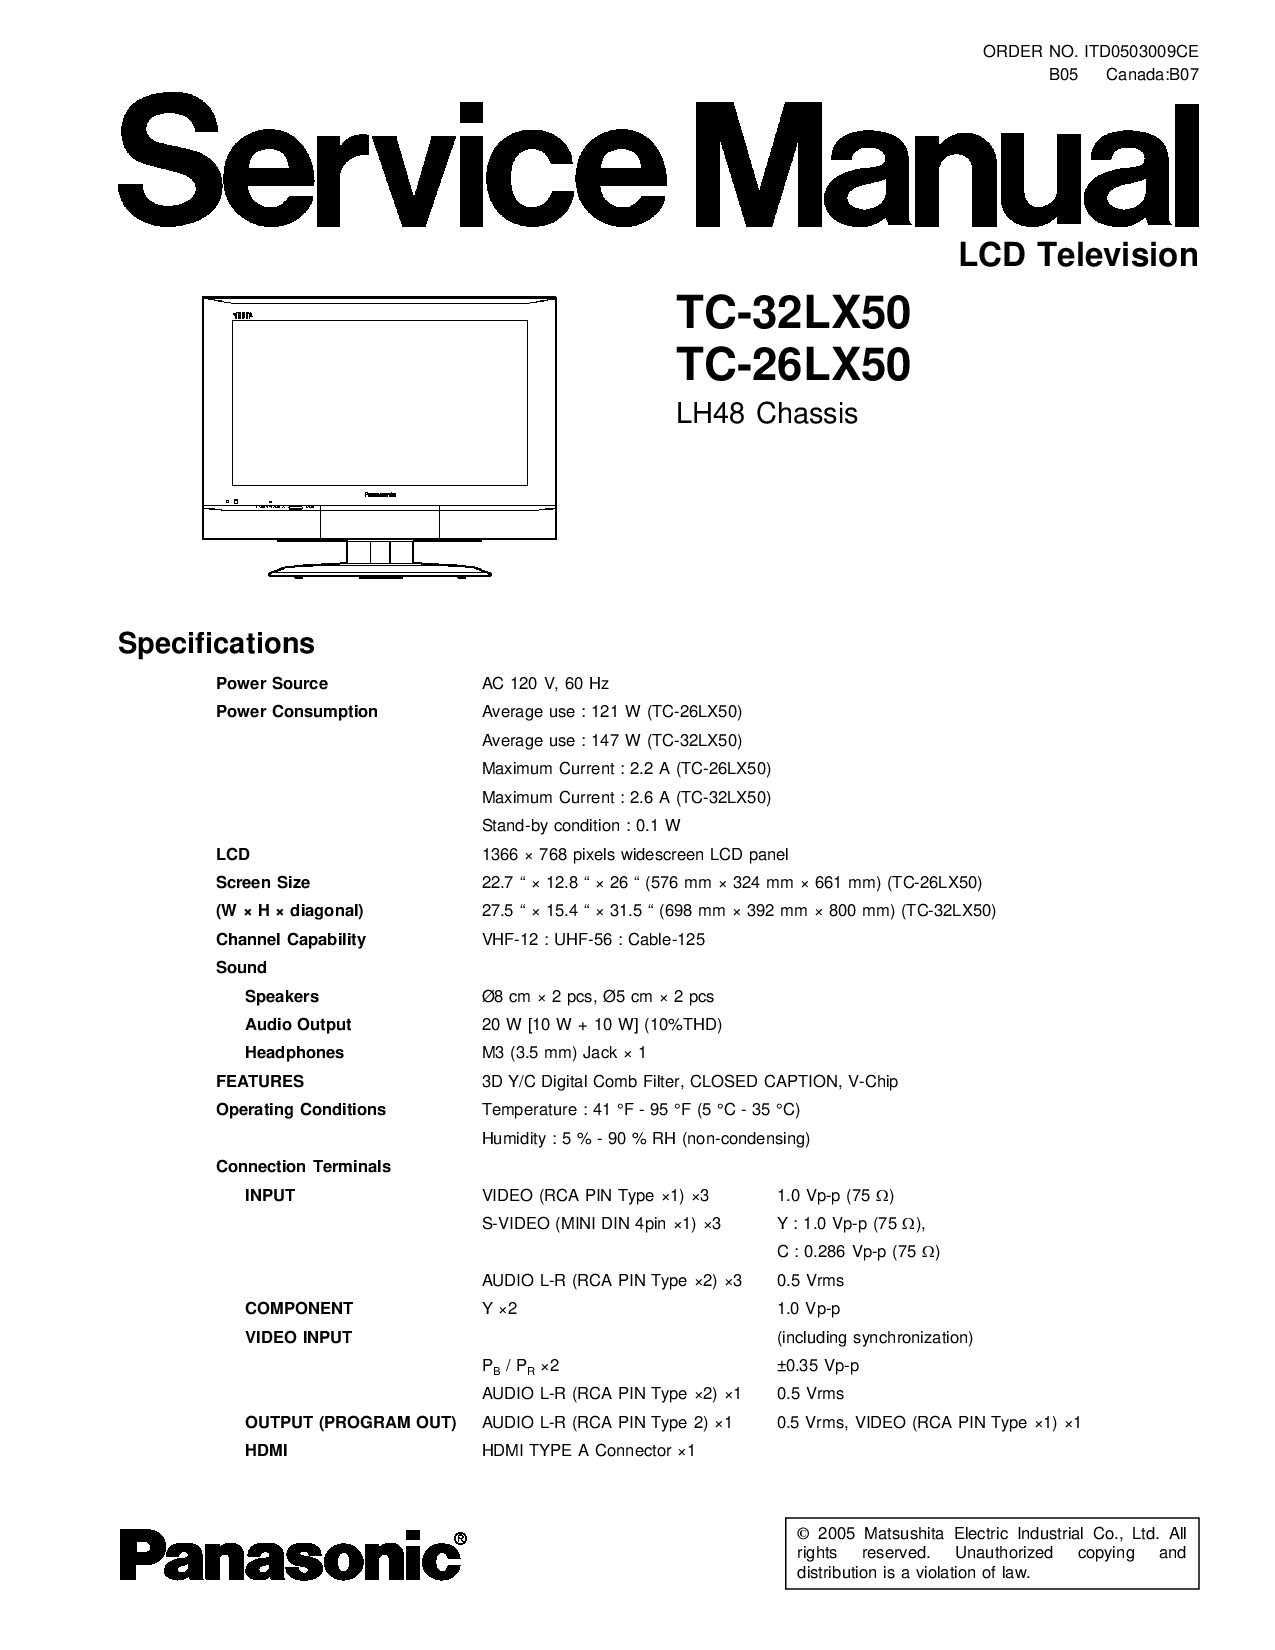 Panasonic TC-32LX50, TC-26LX50 Service manual